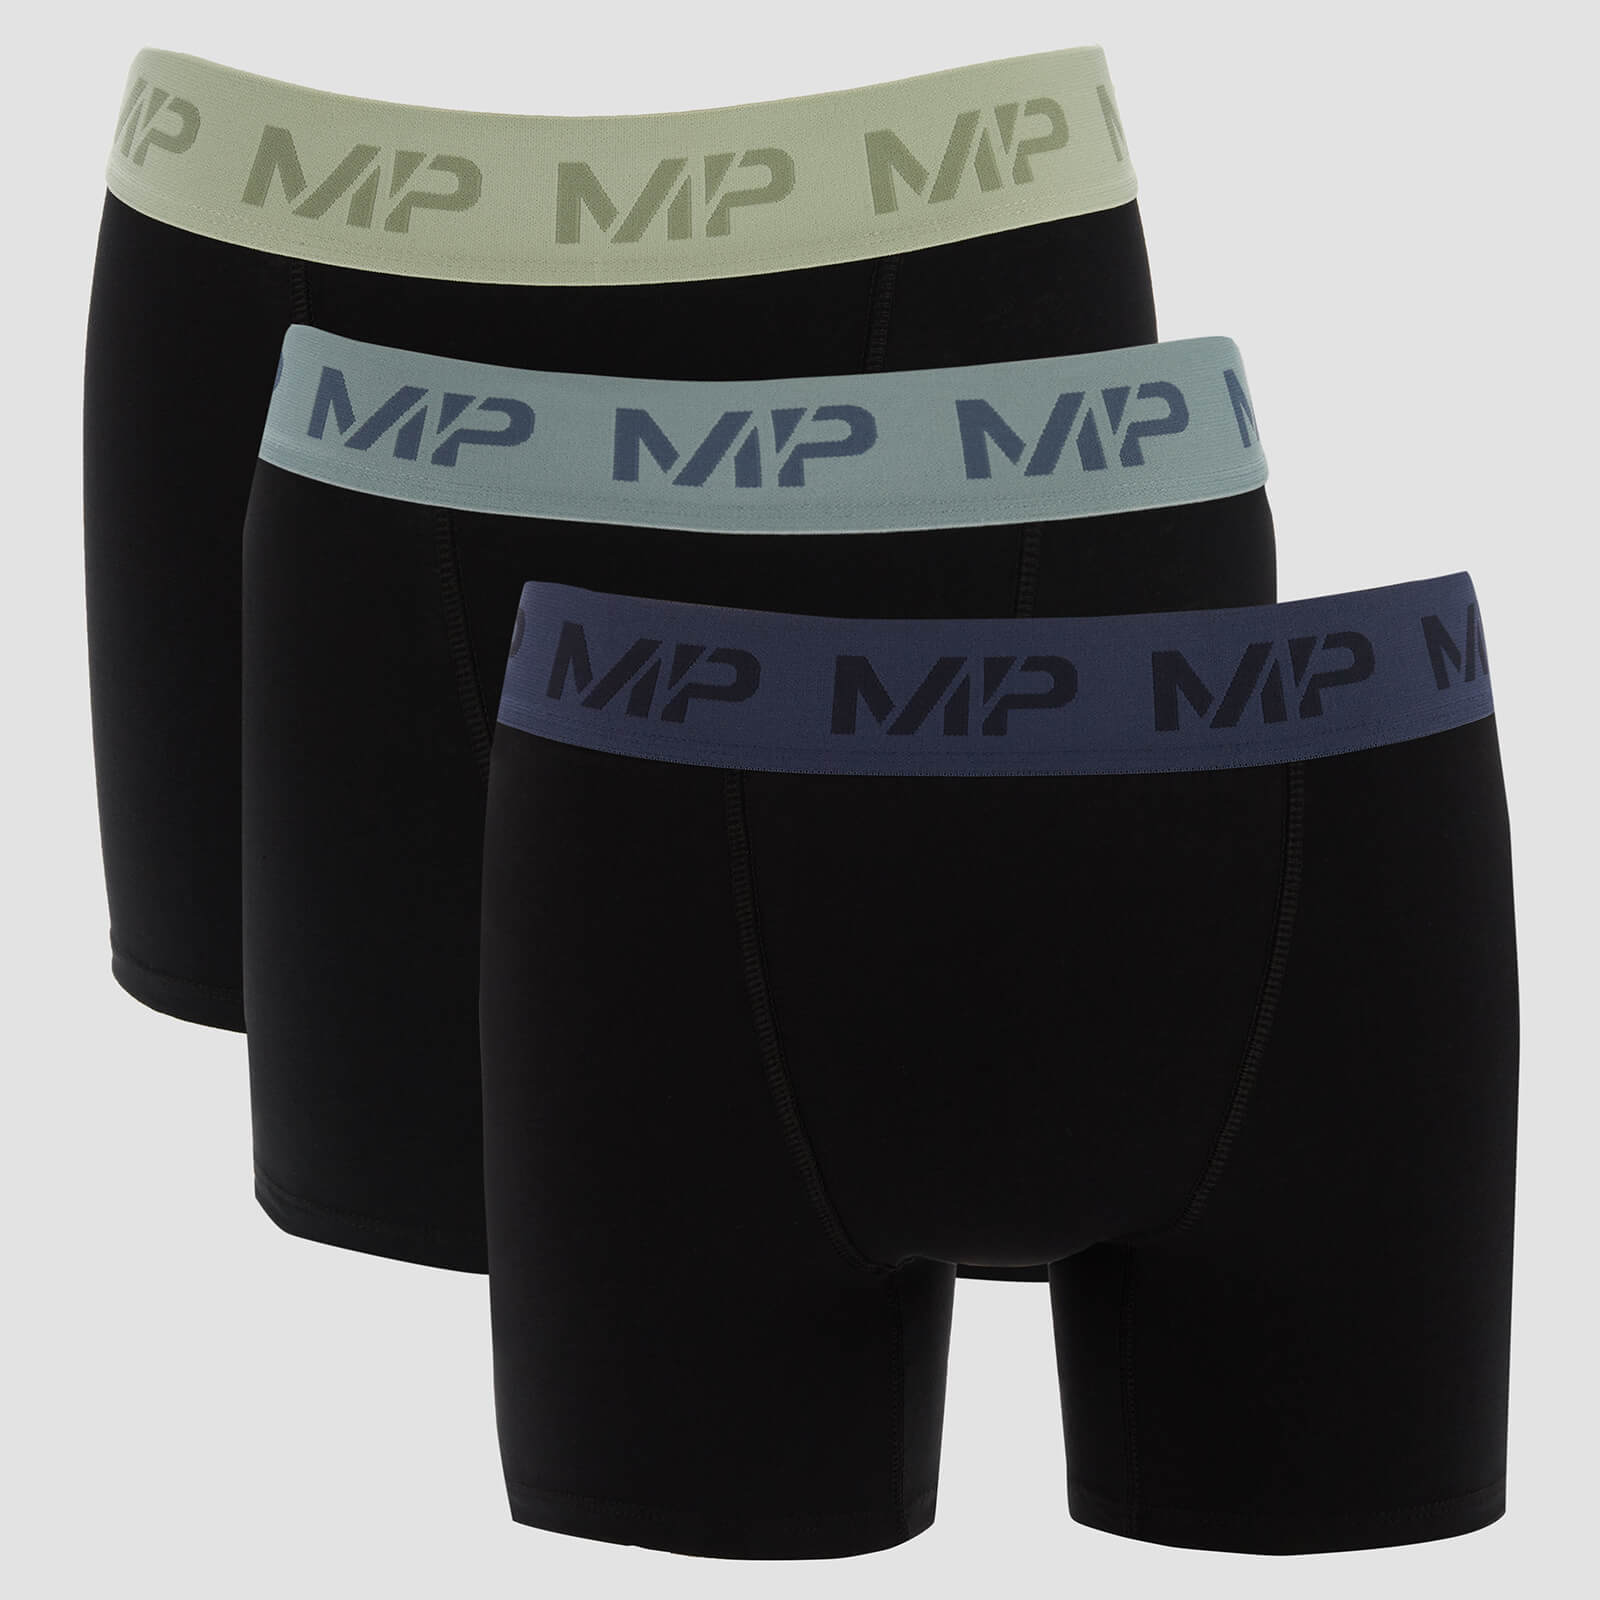 Boxers à ceinture colorée MP pour hommes (lot de 3) – Noir/Vert givré/Bleu acier/Bleu glacé - S